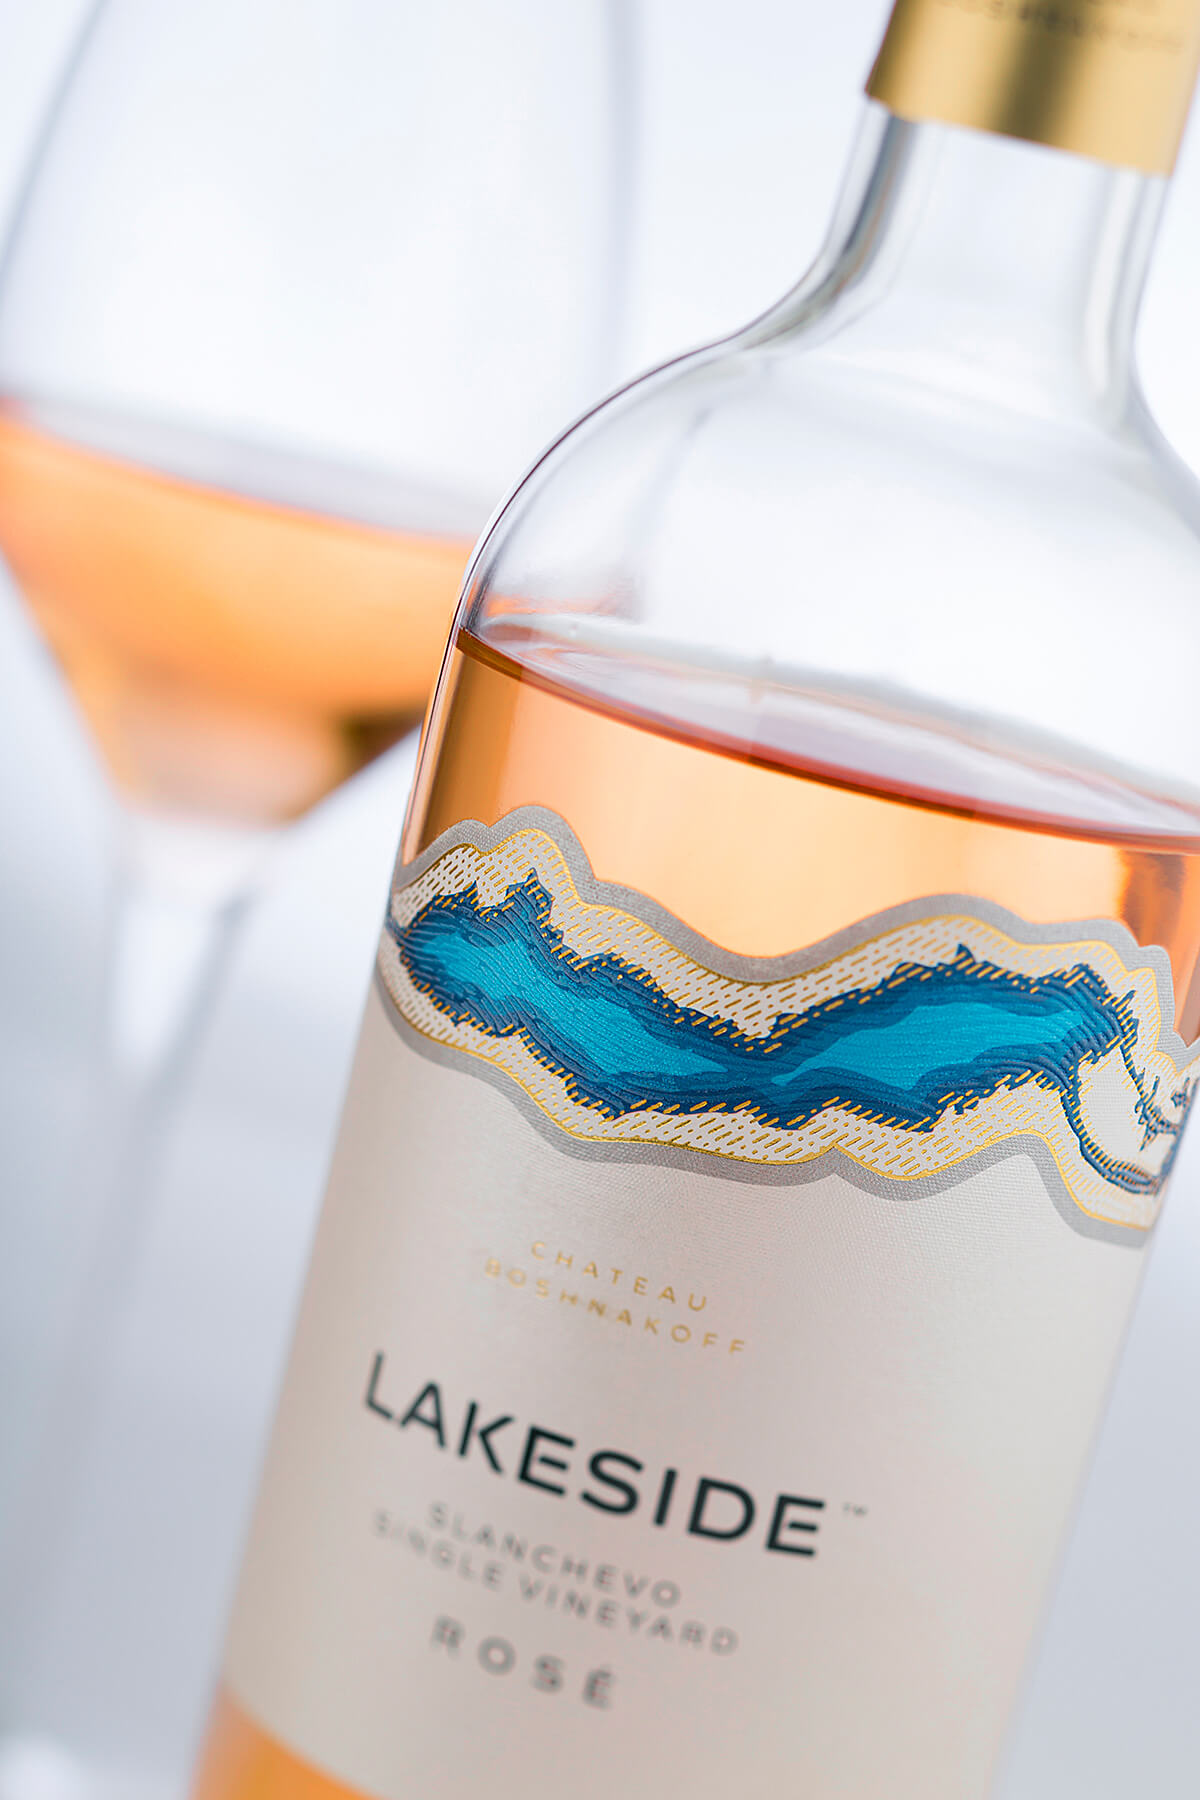 Lakeside Wine Label Design